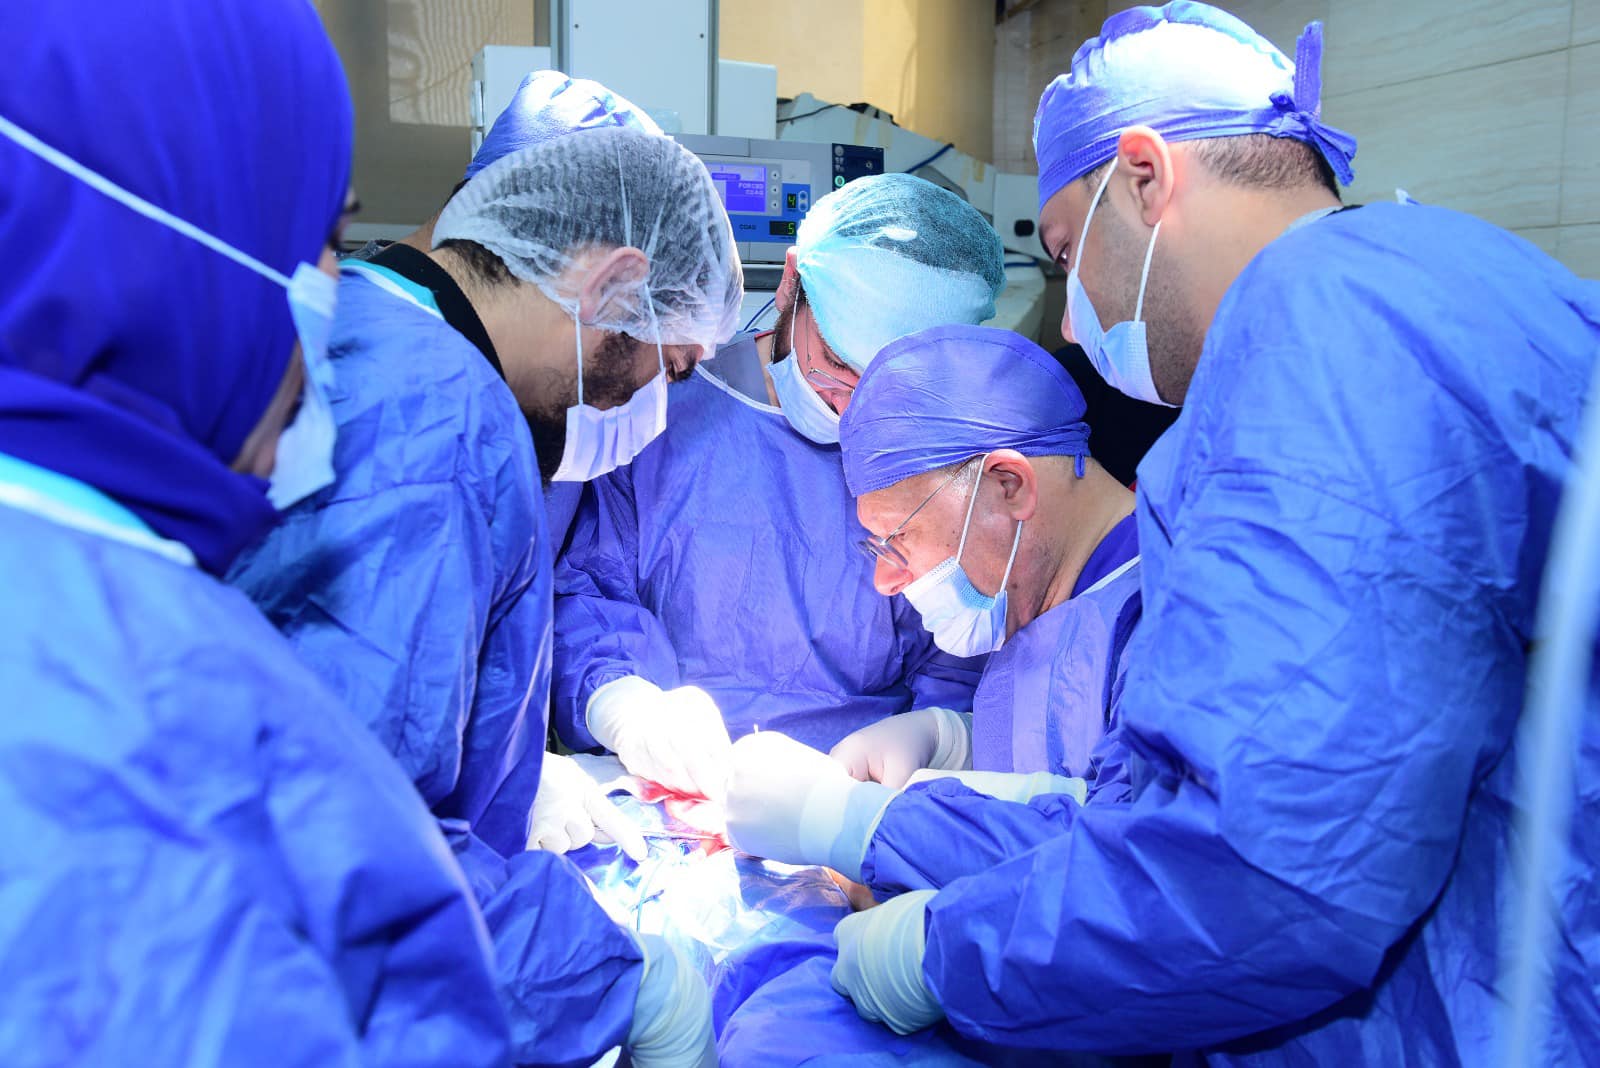 رئيس جامعة سوهاج يجري عملية جراحية دقيقة استغرقت ٩ ساعات لطفلة مصابة بشلل ولادي بإعادة توصيل الأعصاب المقطوعة بواسطة الميكروسكوب الجراحي